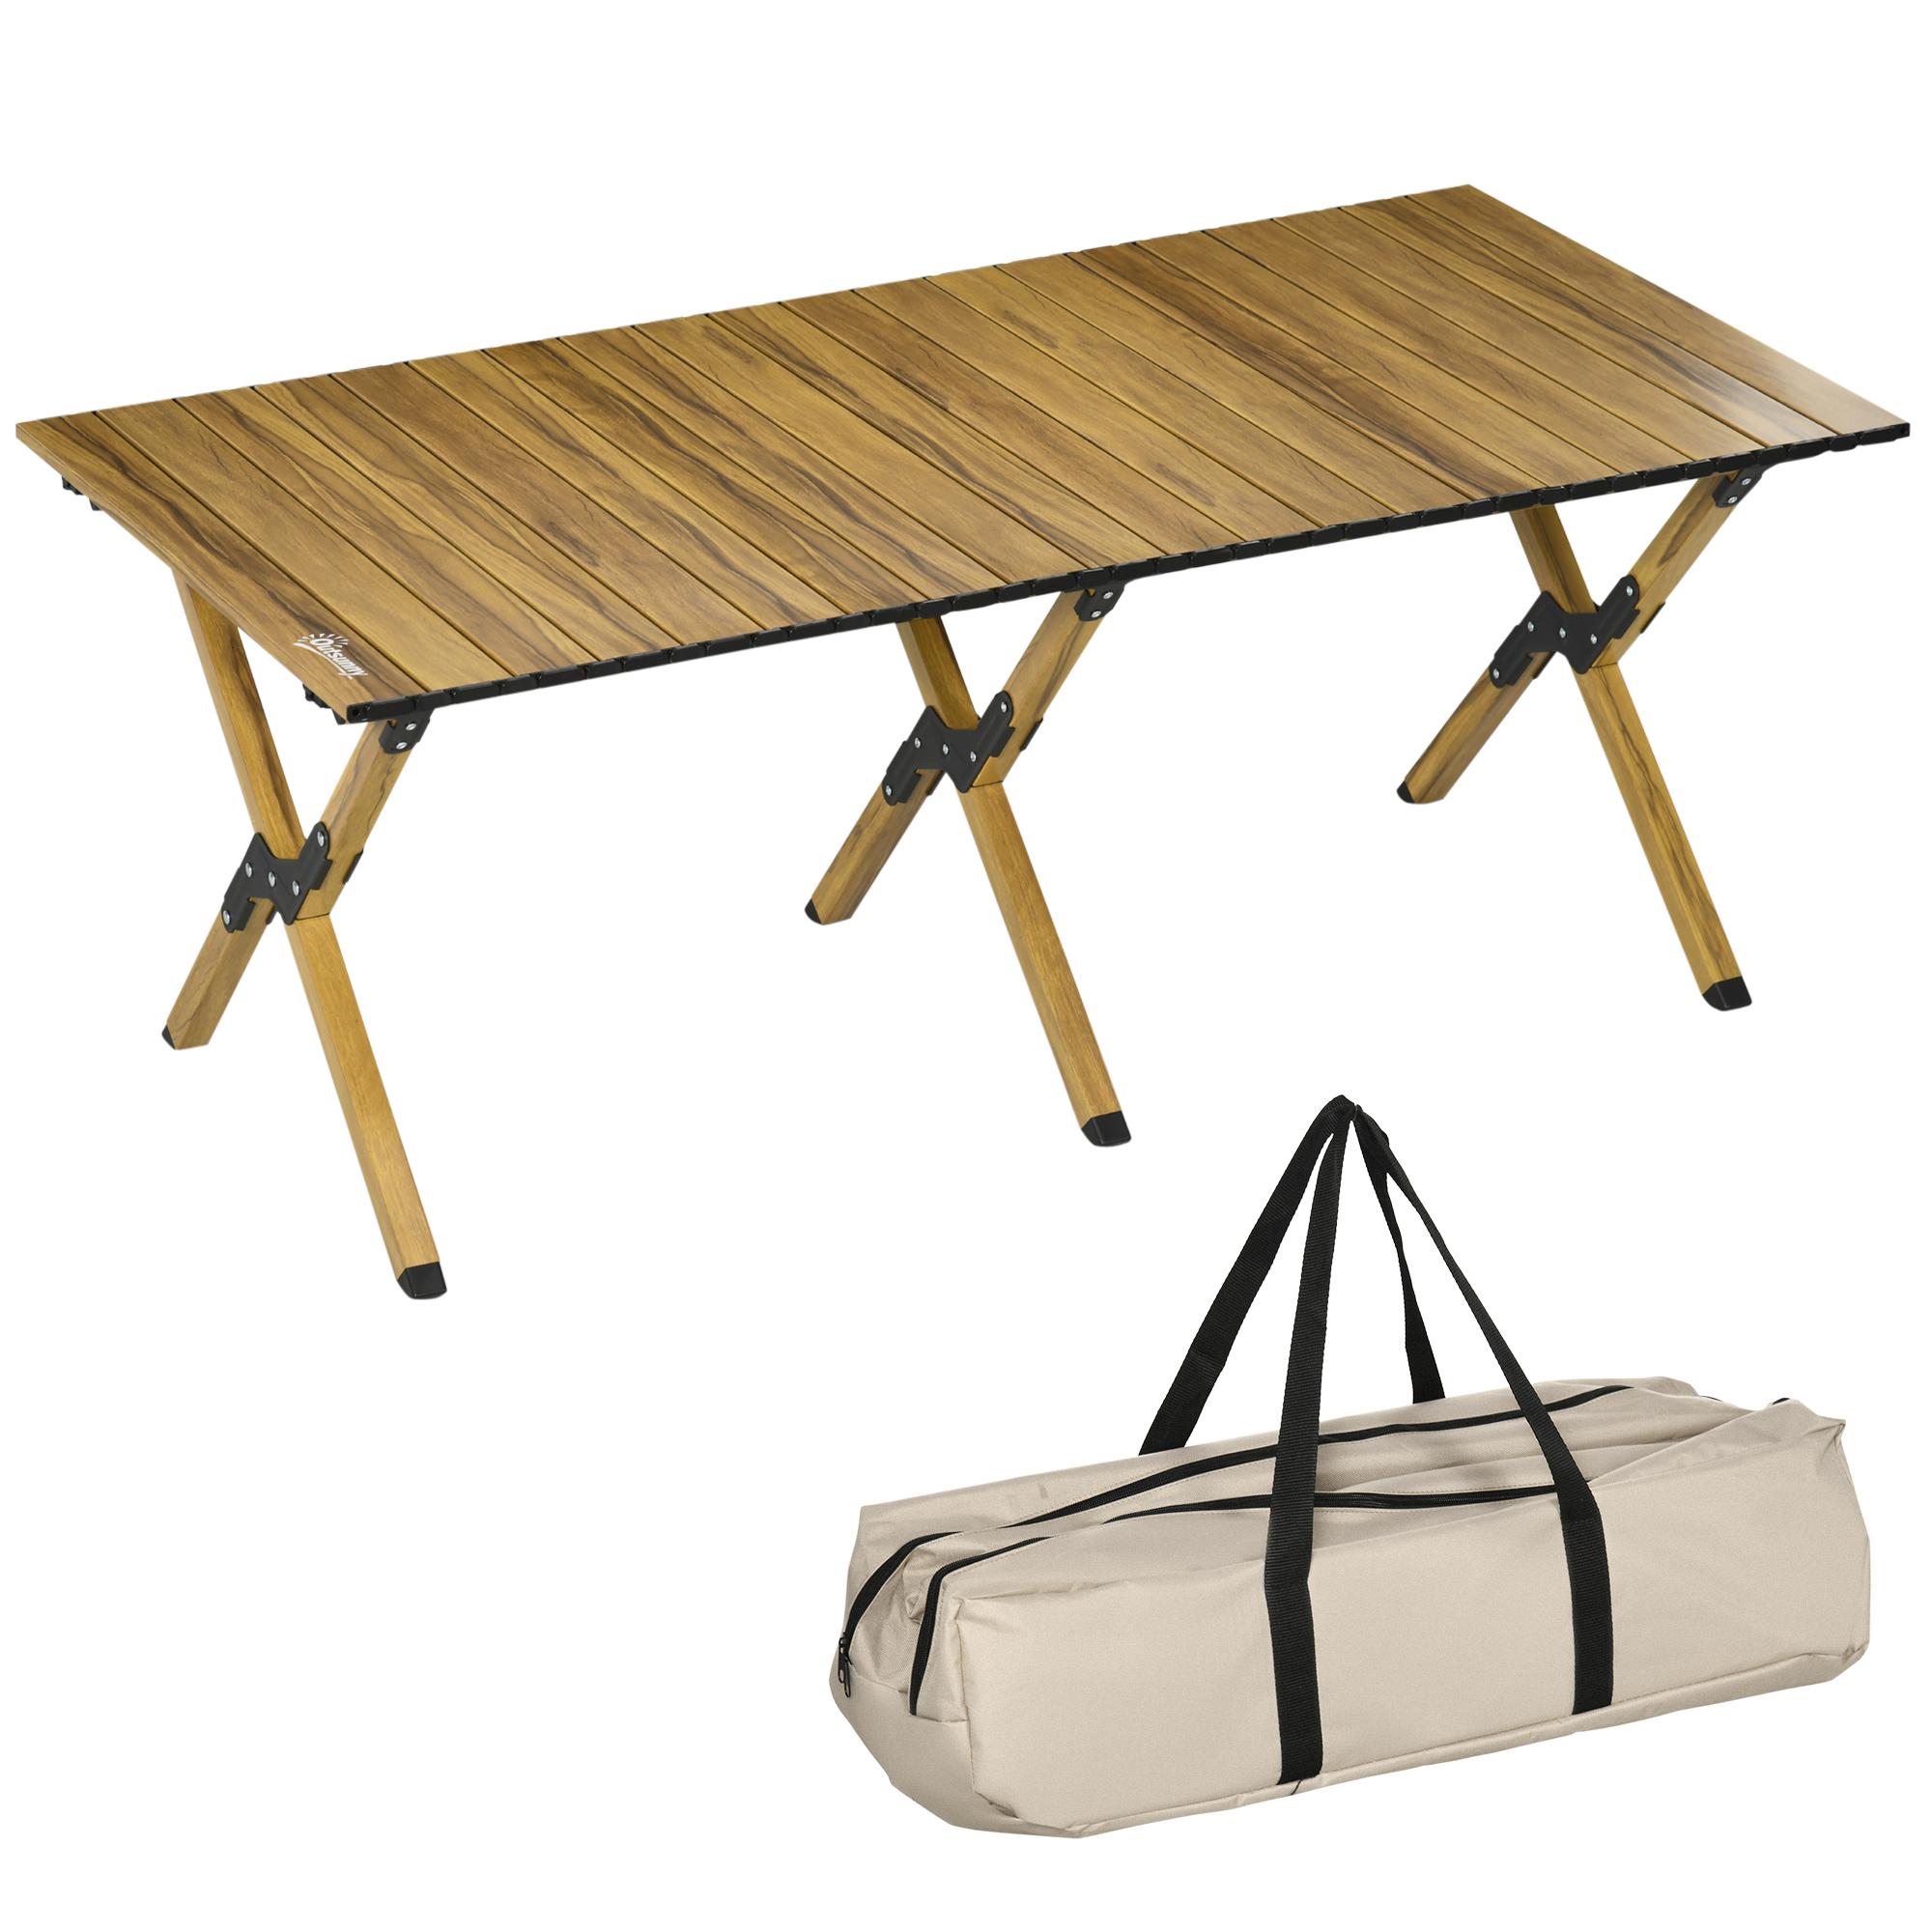 Sac de transport robuste pour table pliante camping bois fiable et durable